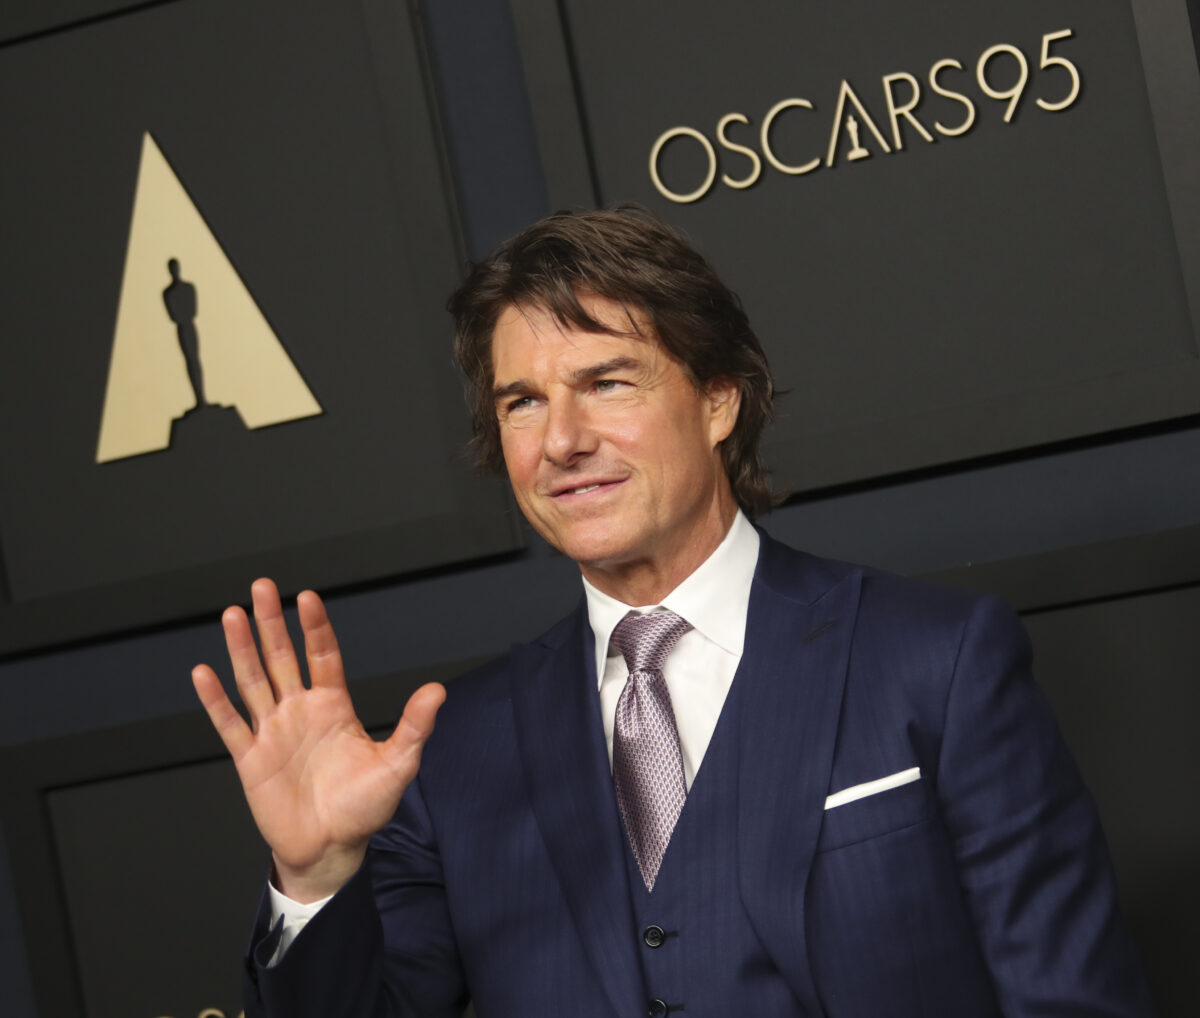 Tom Cruise’s award history at the Oscars